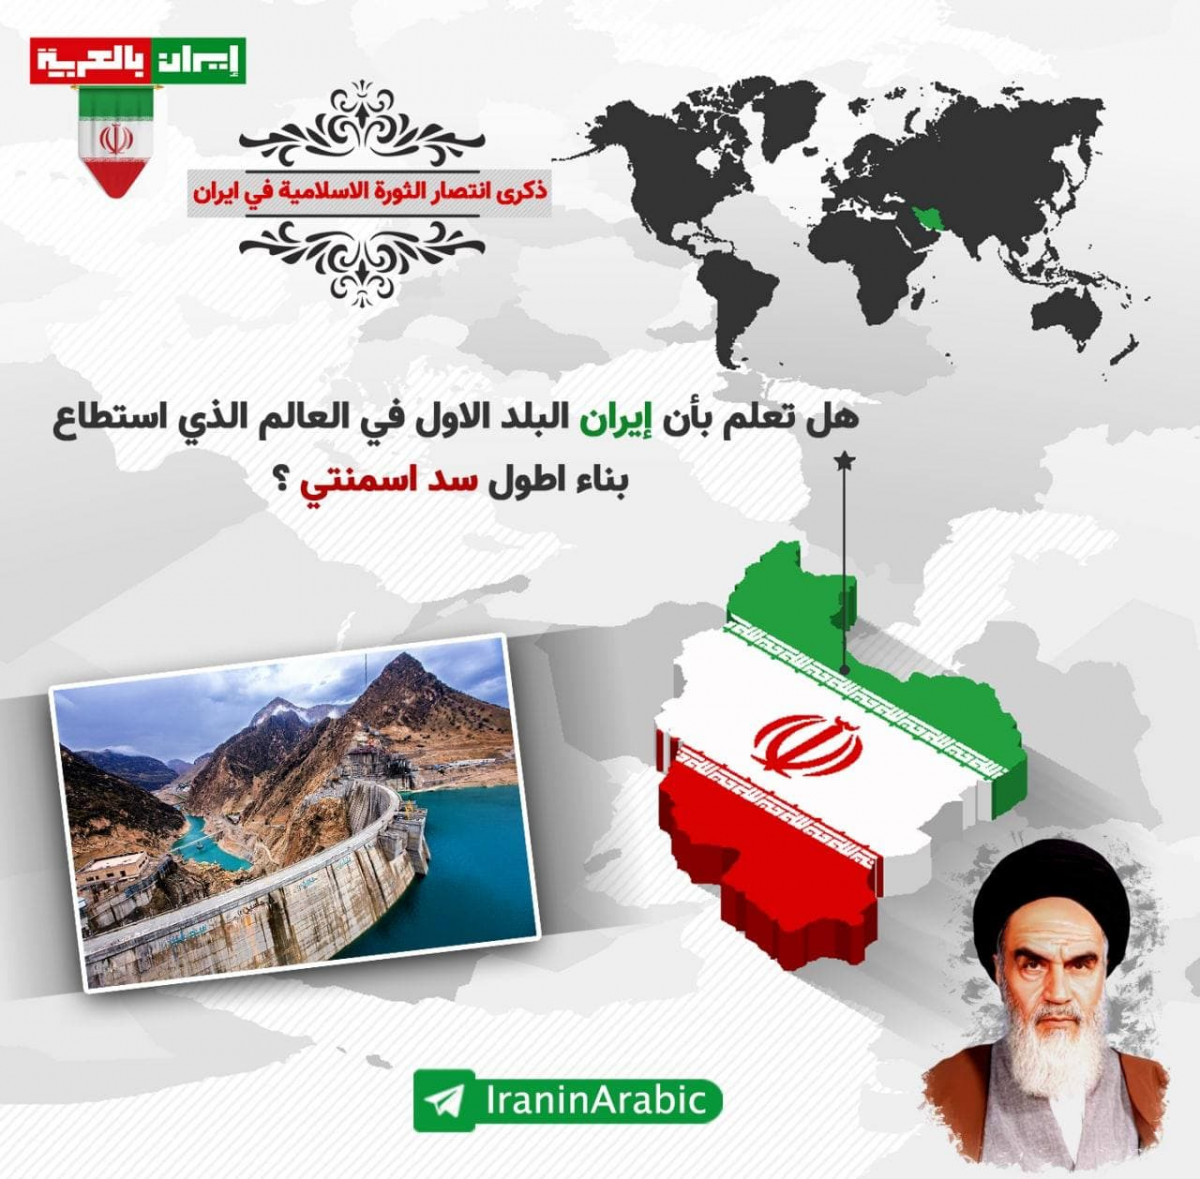 انفوجرافيك / هل تعلم بأن إيران البلد الاول في العالم الذي استطاع بناء اطول سد اسمنتي